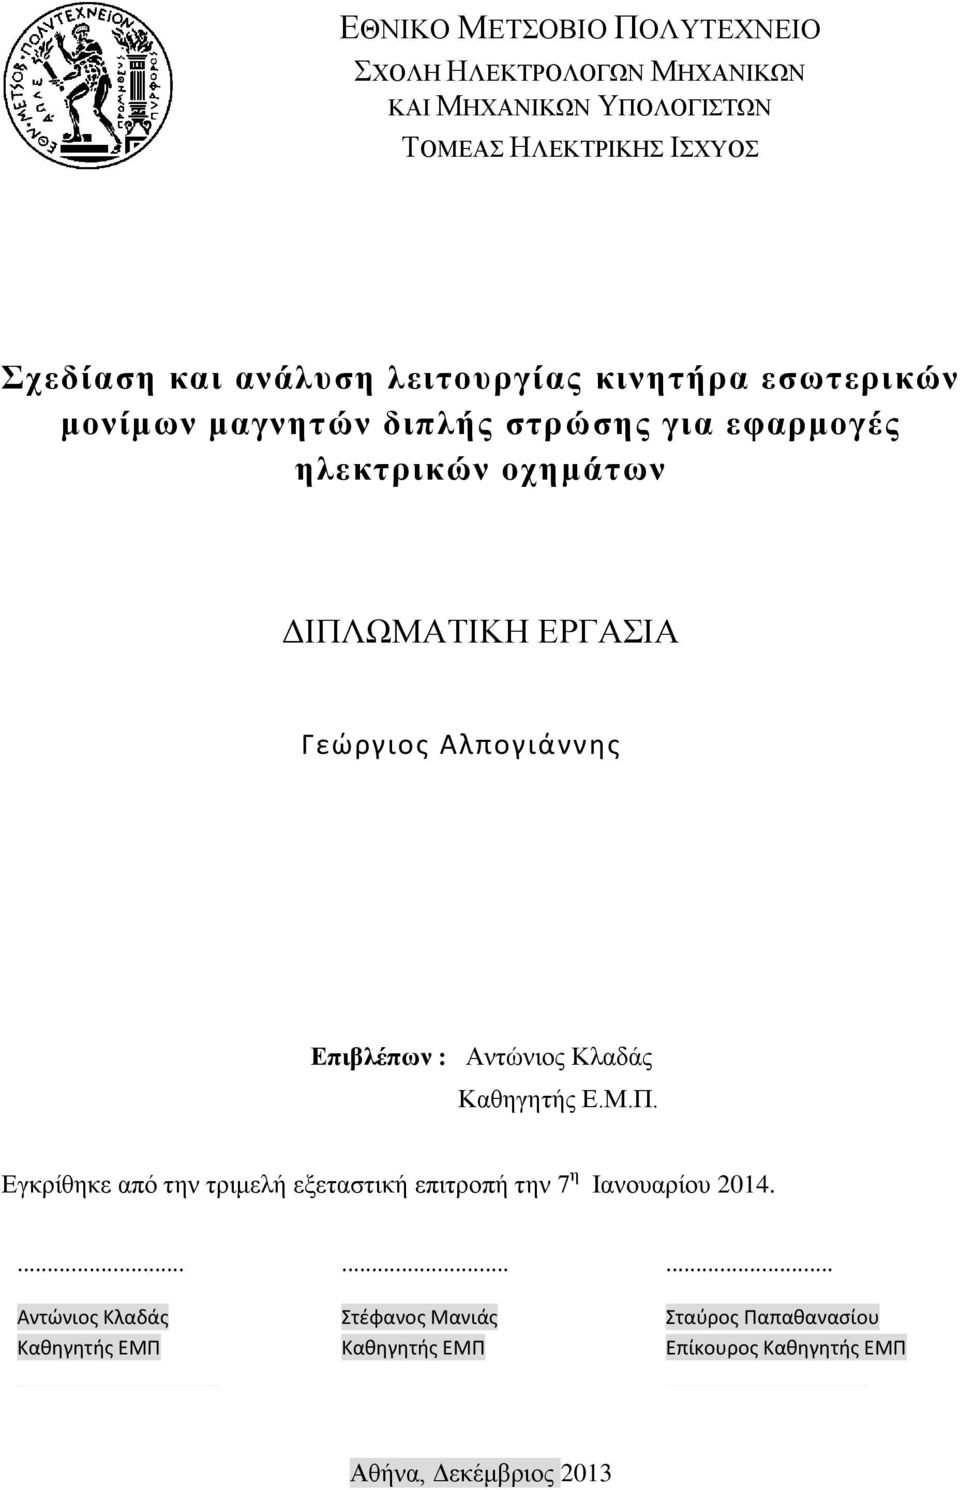 Αντώνιος Κλαδάς Καθηγητής Ε.Μ.Π. Εγκρίθηκε από την τριμελή εξεταστική επιτροπή την 7 η Ιανουαρίου 2014.